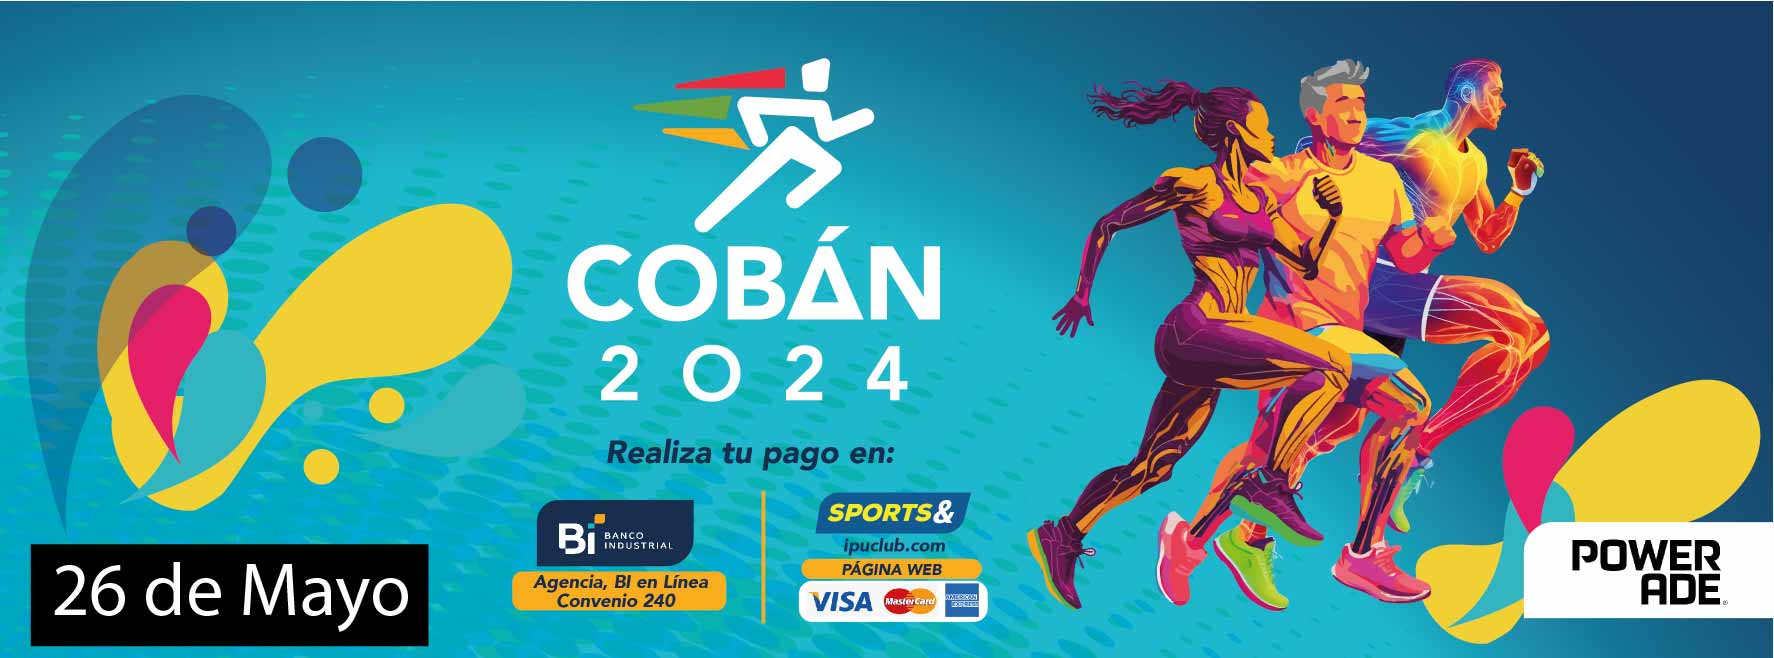 Coban 2024